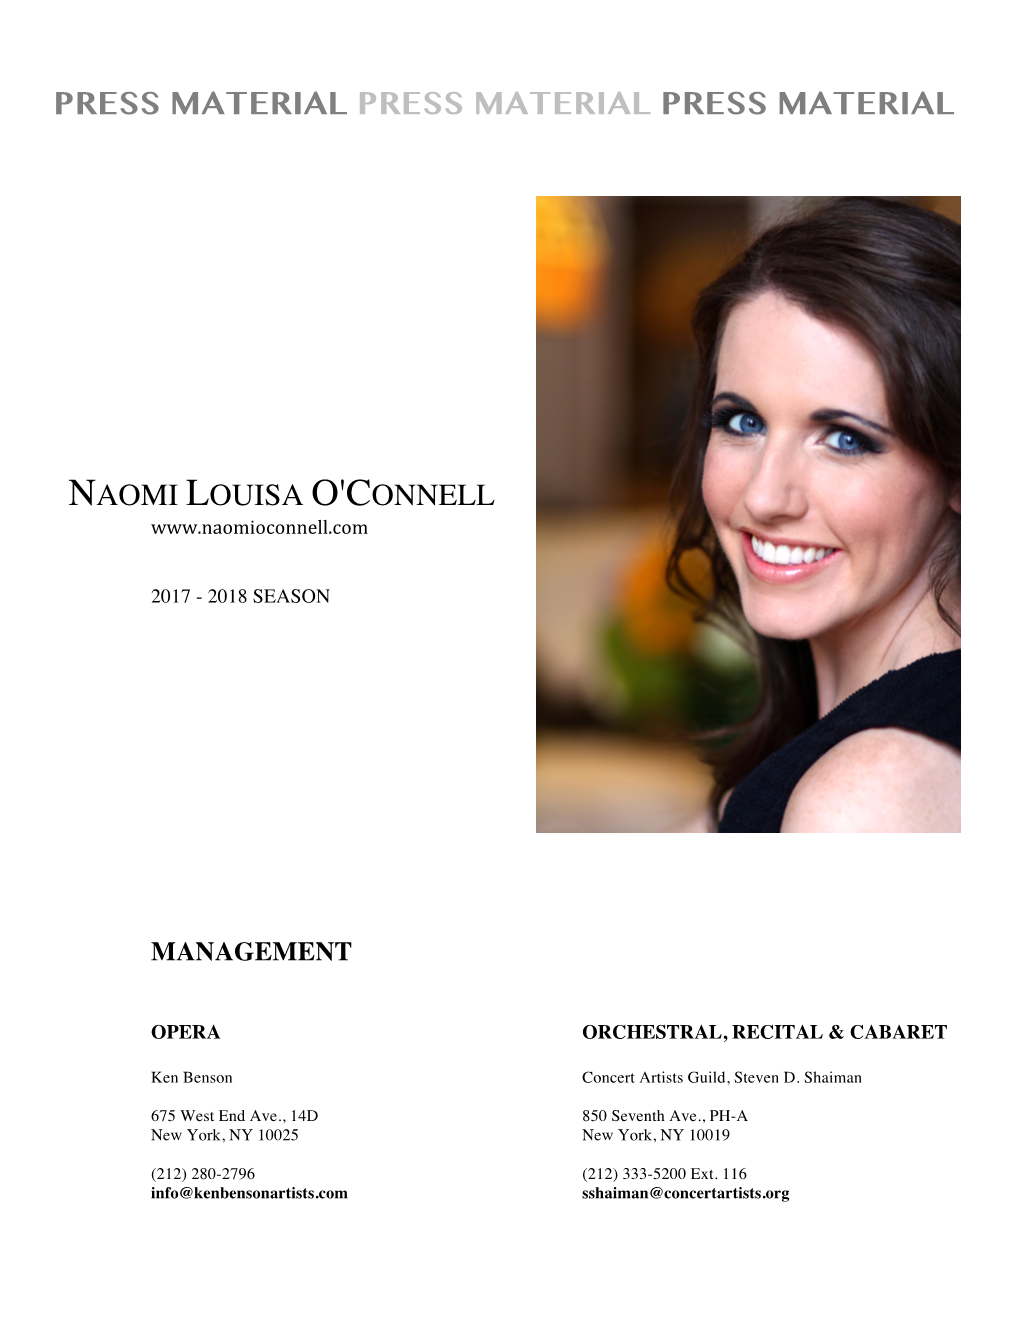 Naomi Louisa O'connell